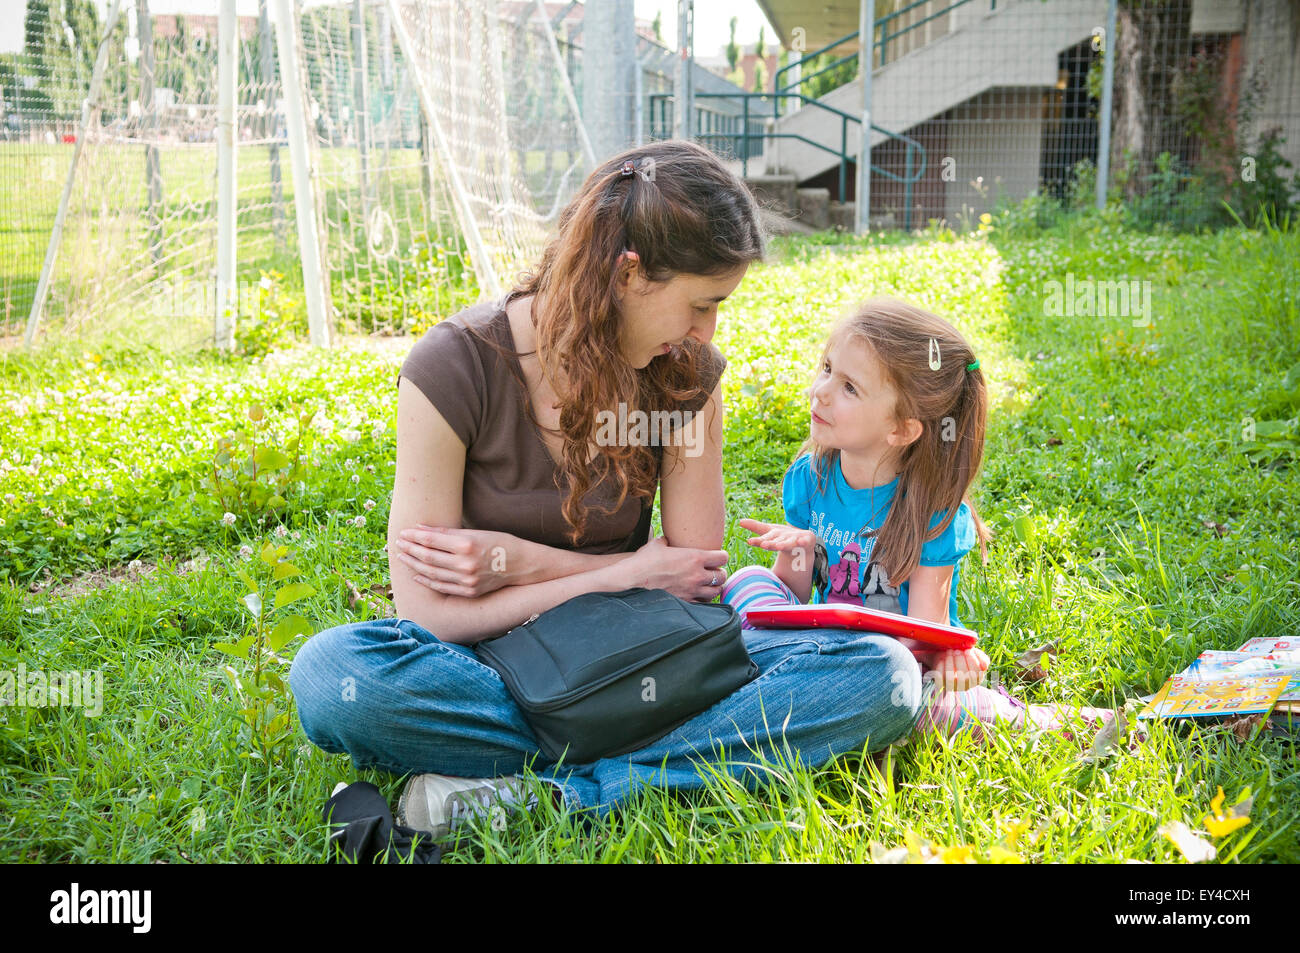 Frau und Kind spielt während der Sitzung in Grass Stockfoto